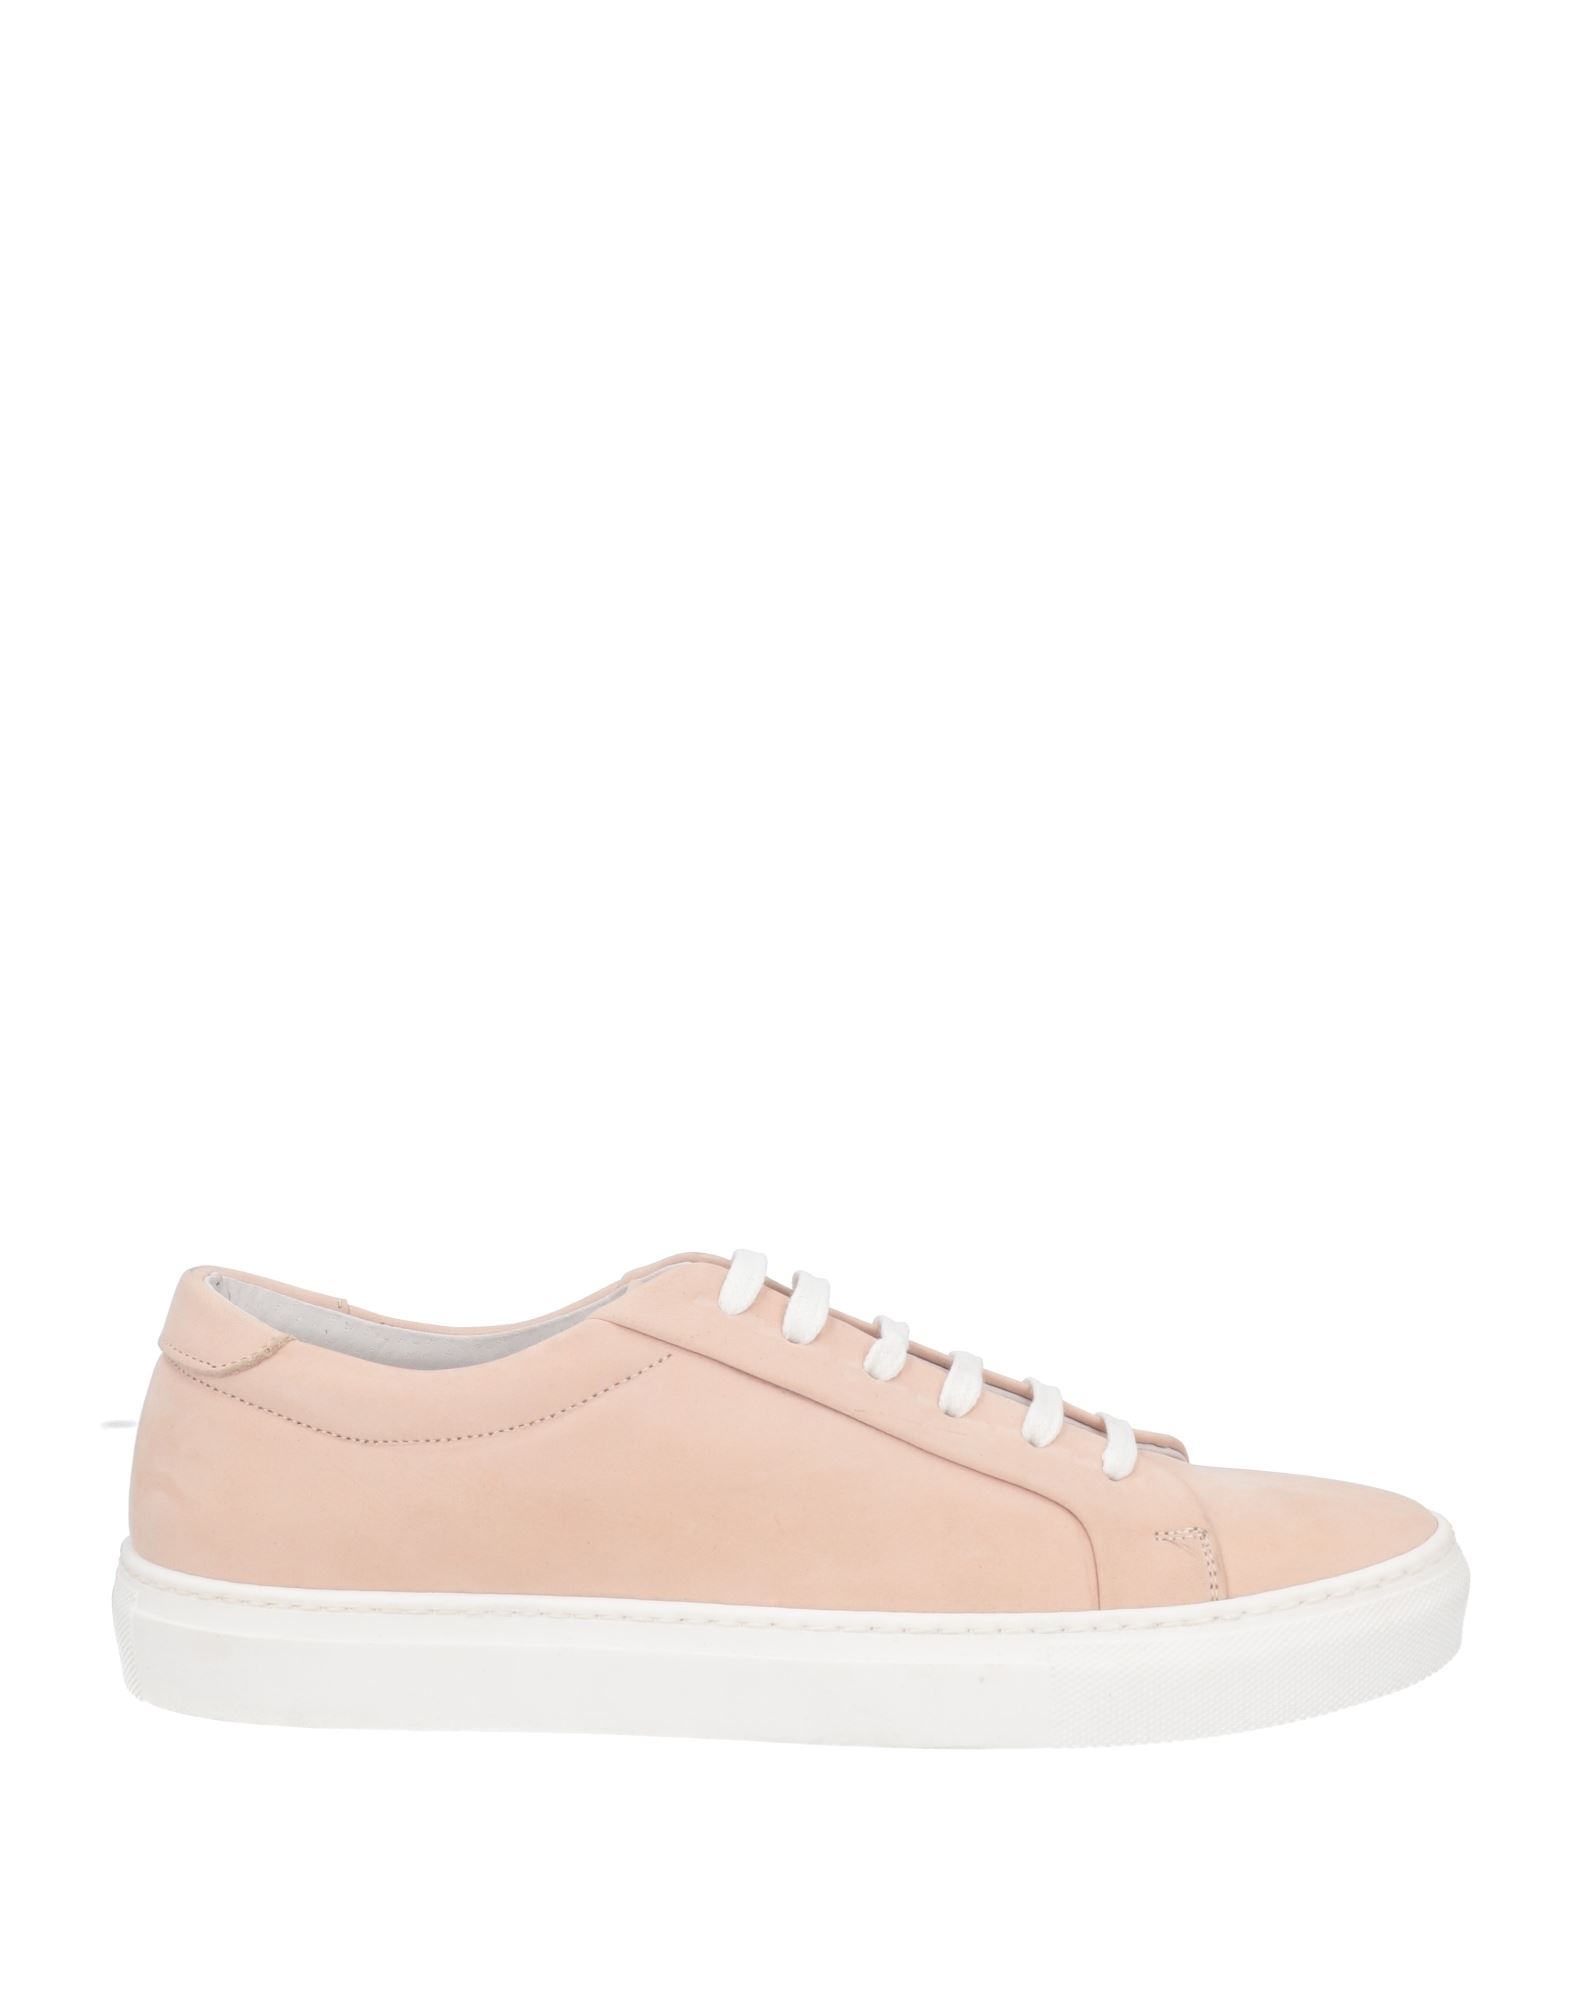 Liu •jo Man Sneakers In Light Pink